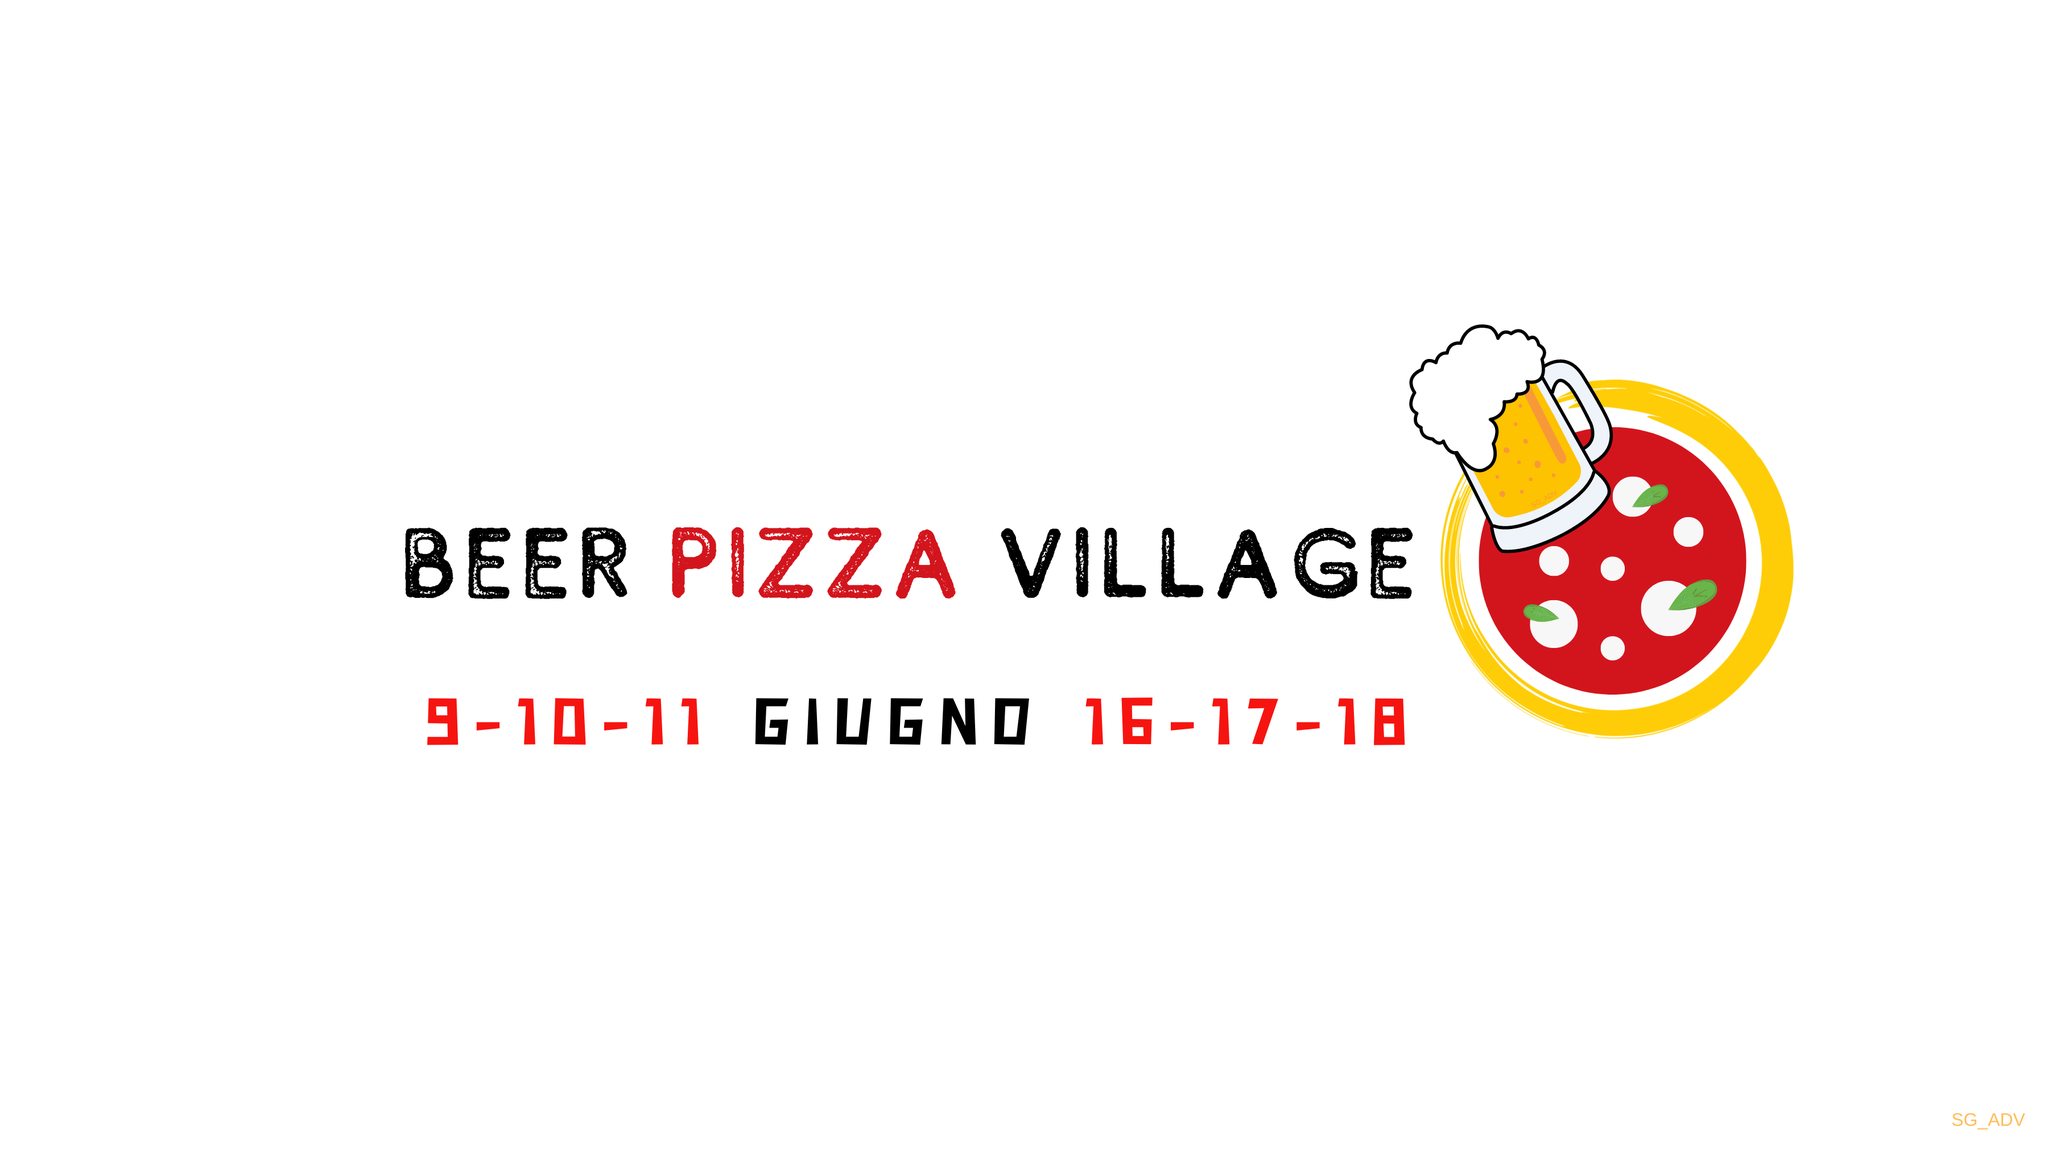 Beer & Pizza Village